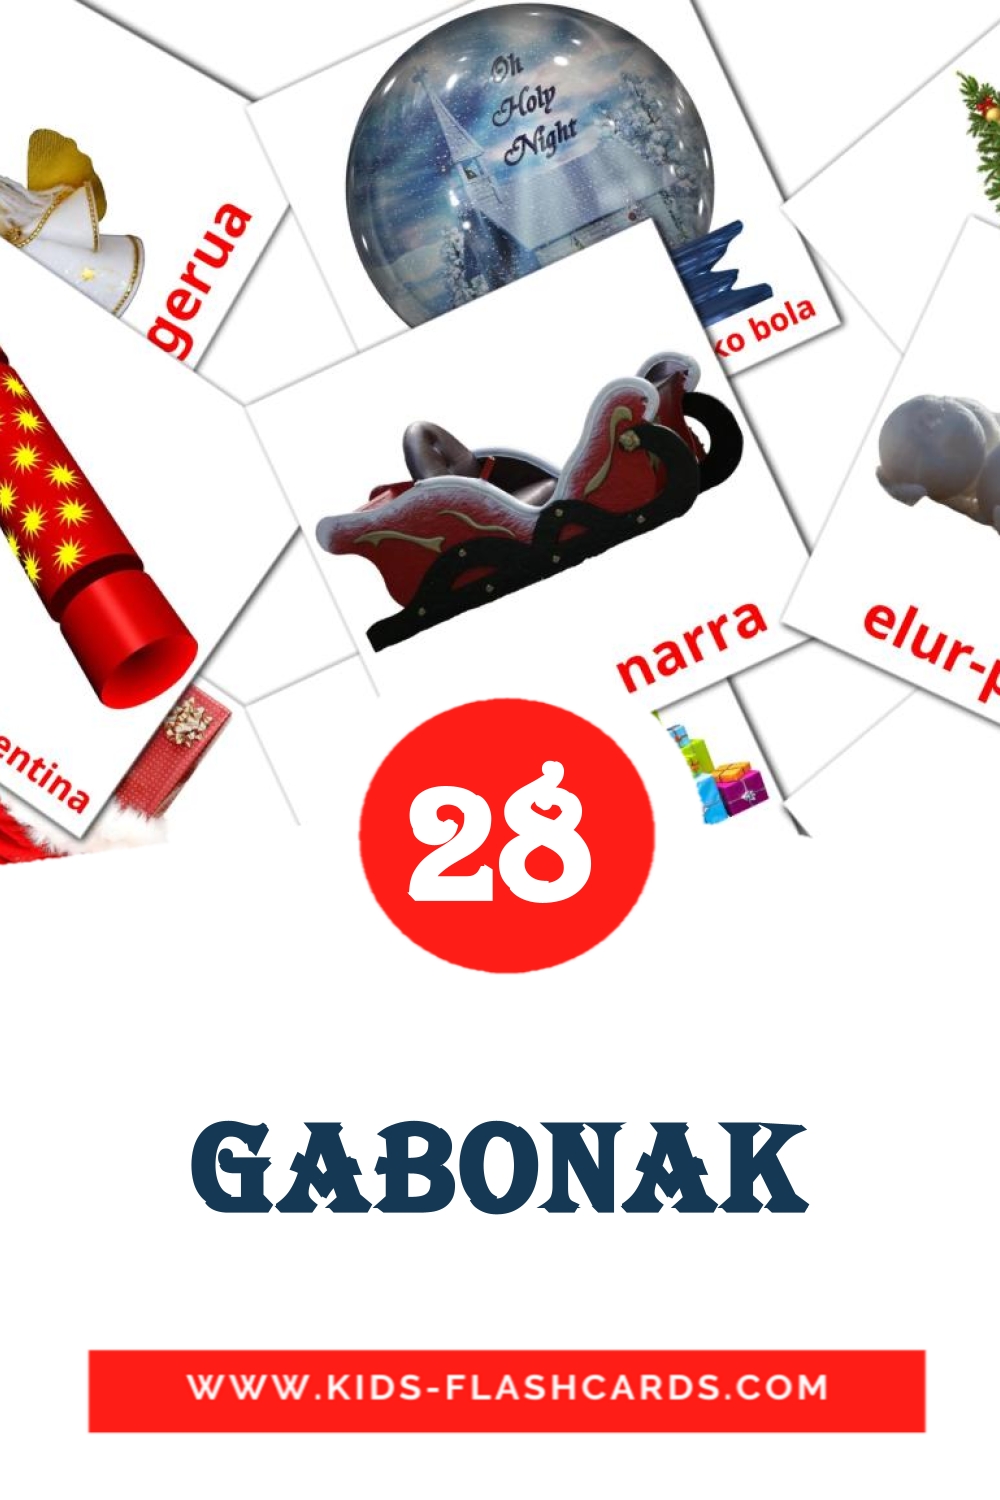 28 Gabonak fotokaarten voor kleuters in het baskisch